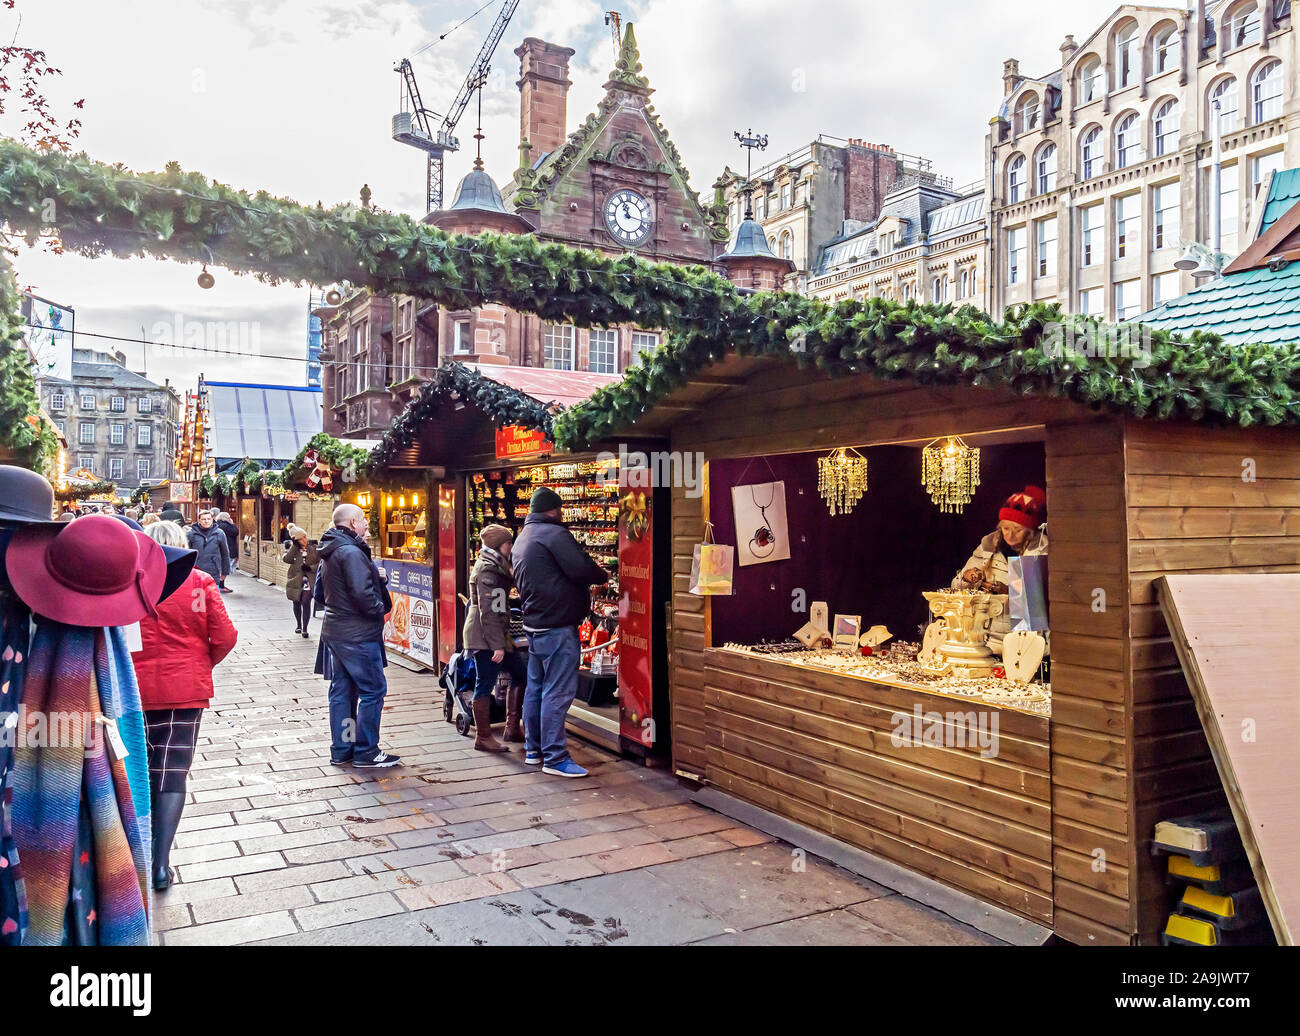 Marché de Noël 2019 de Glasgow à St Enoch square Glasgow Ecosse avec des stands Banque D'Images